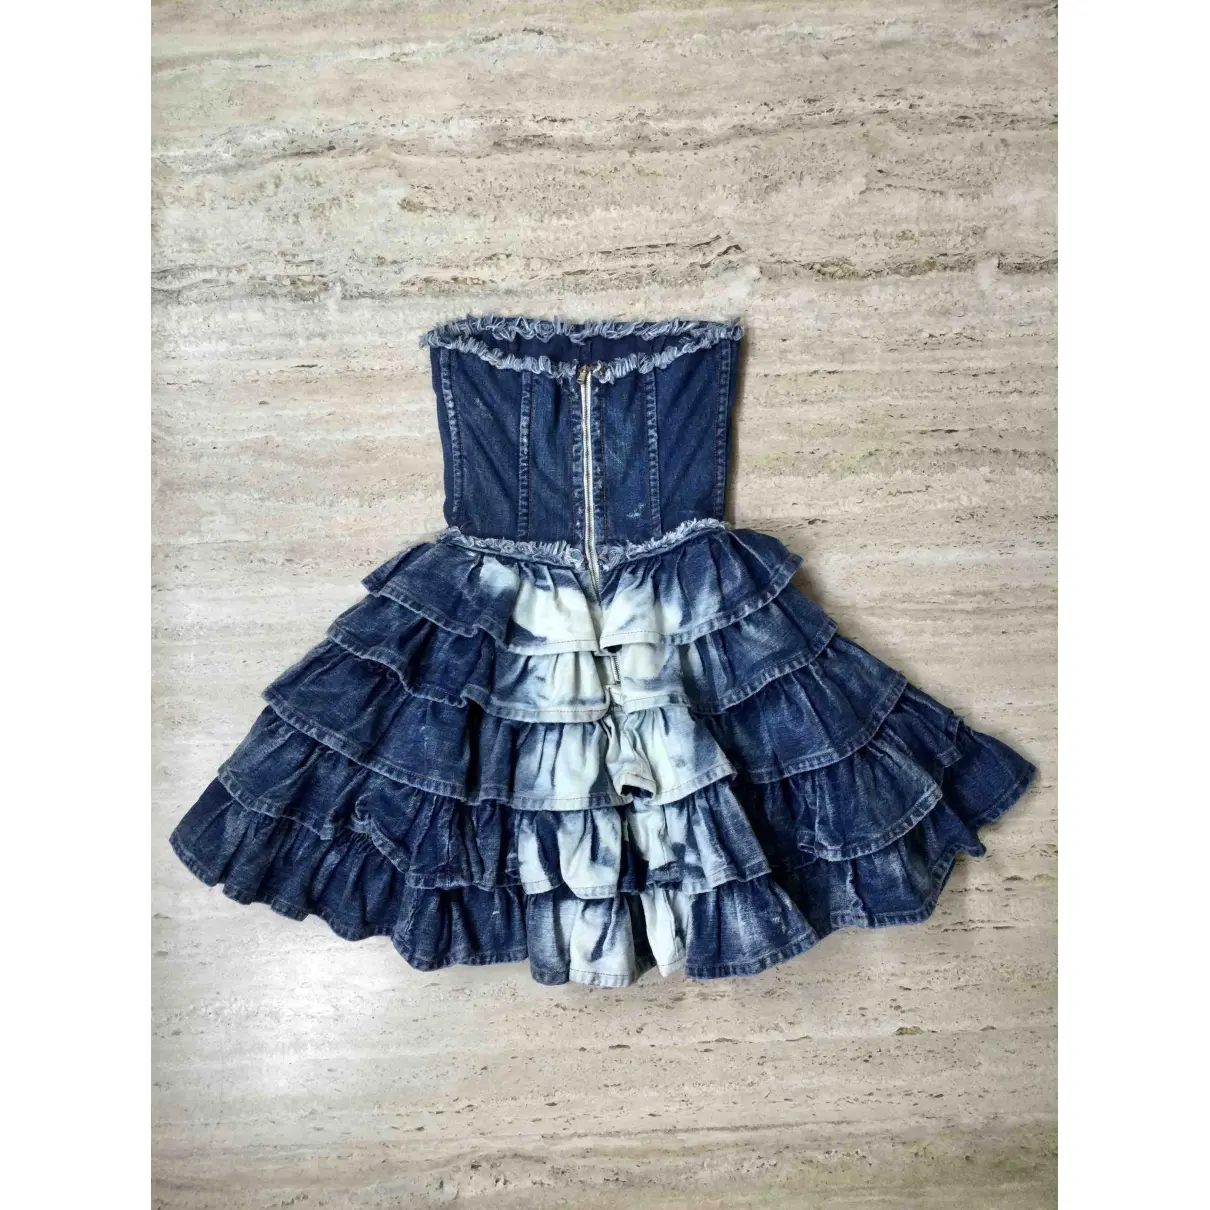 Buy D&G Mini dress online